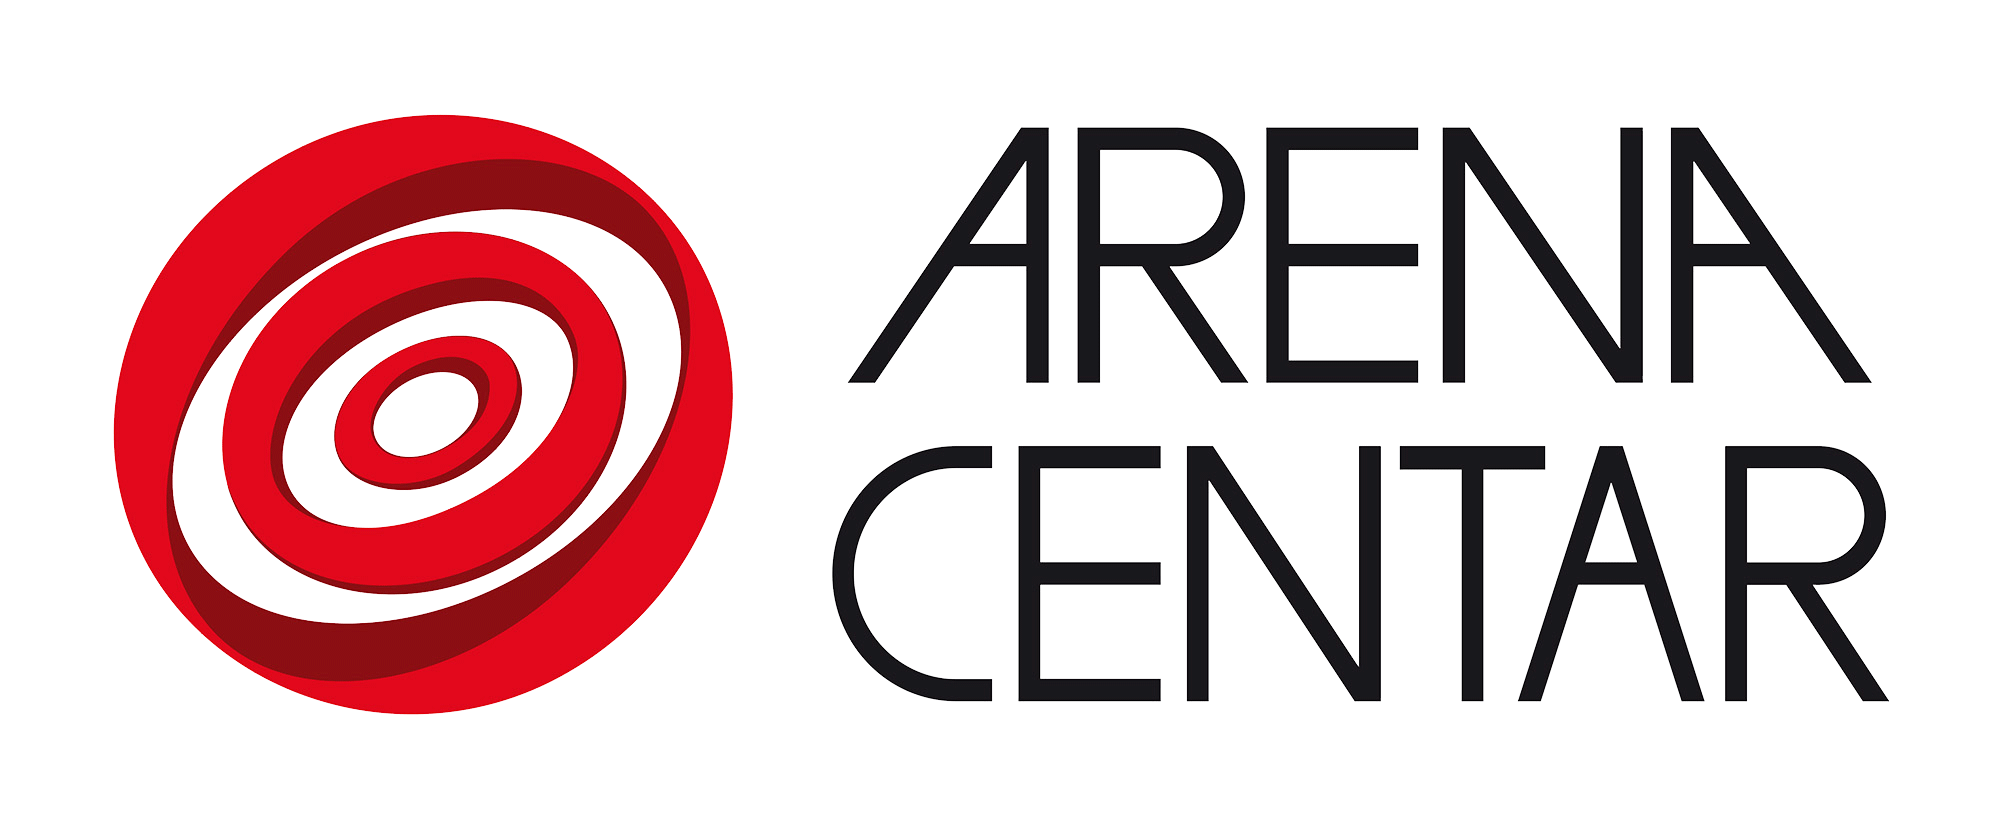 AC_logo